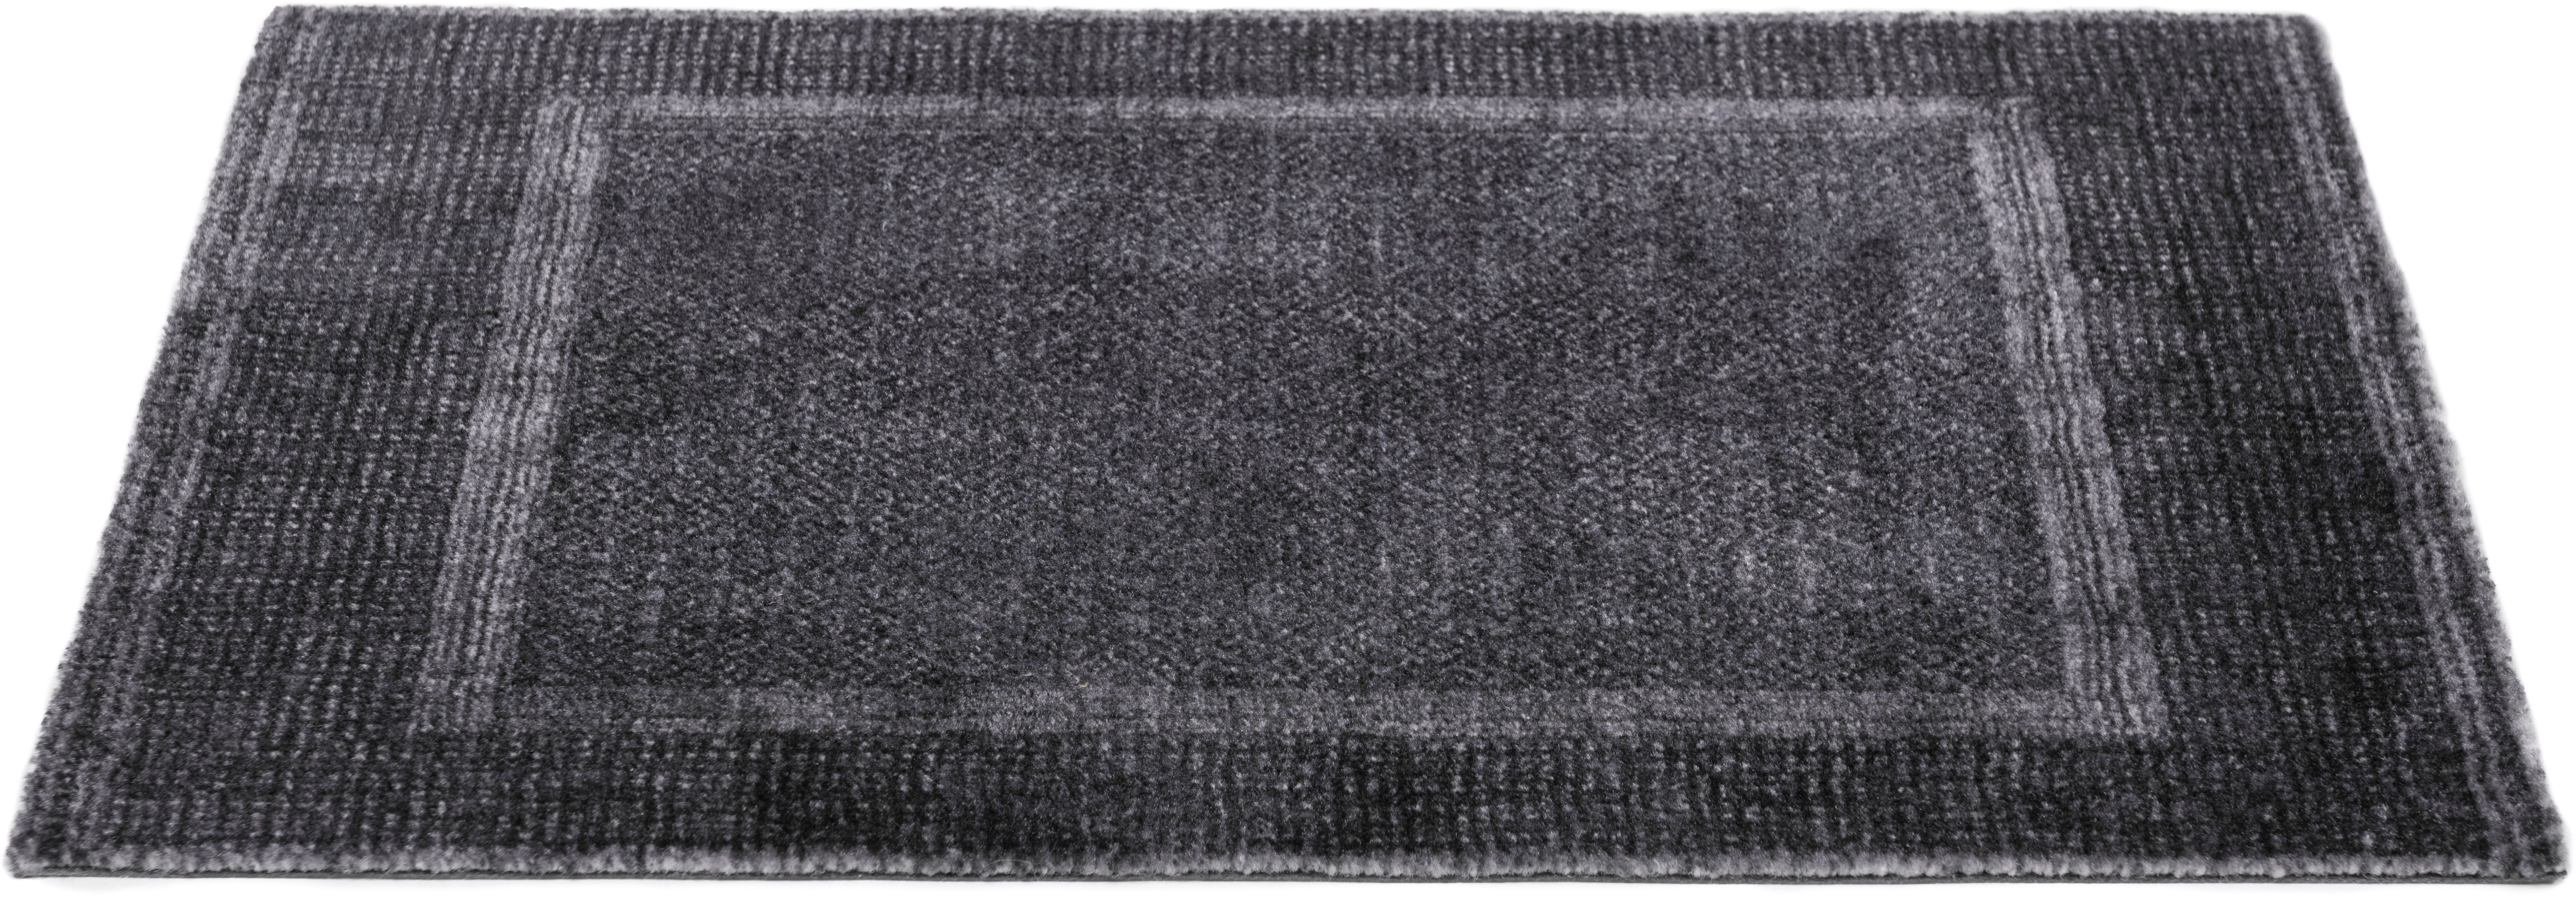 Fußmatte, Square BB, Barbara Becker, rechteckig, Höhe 10 mm, maschinell getuftet